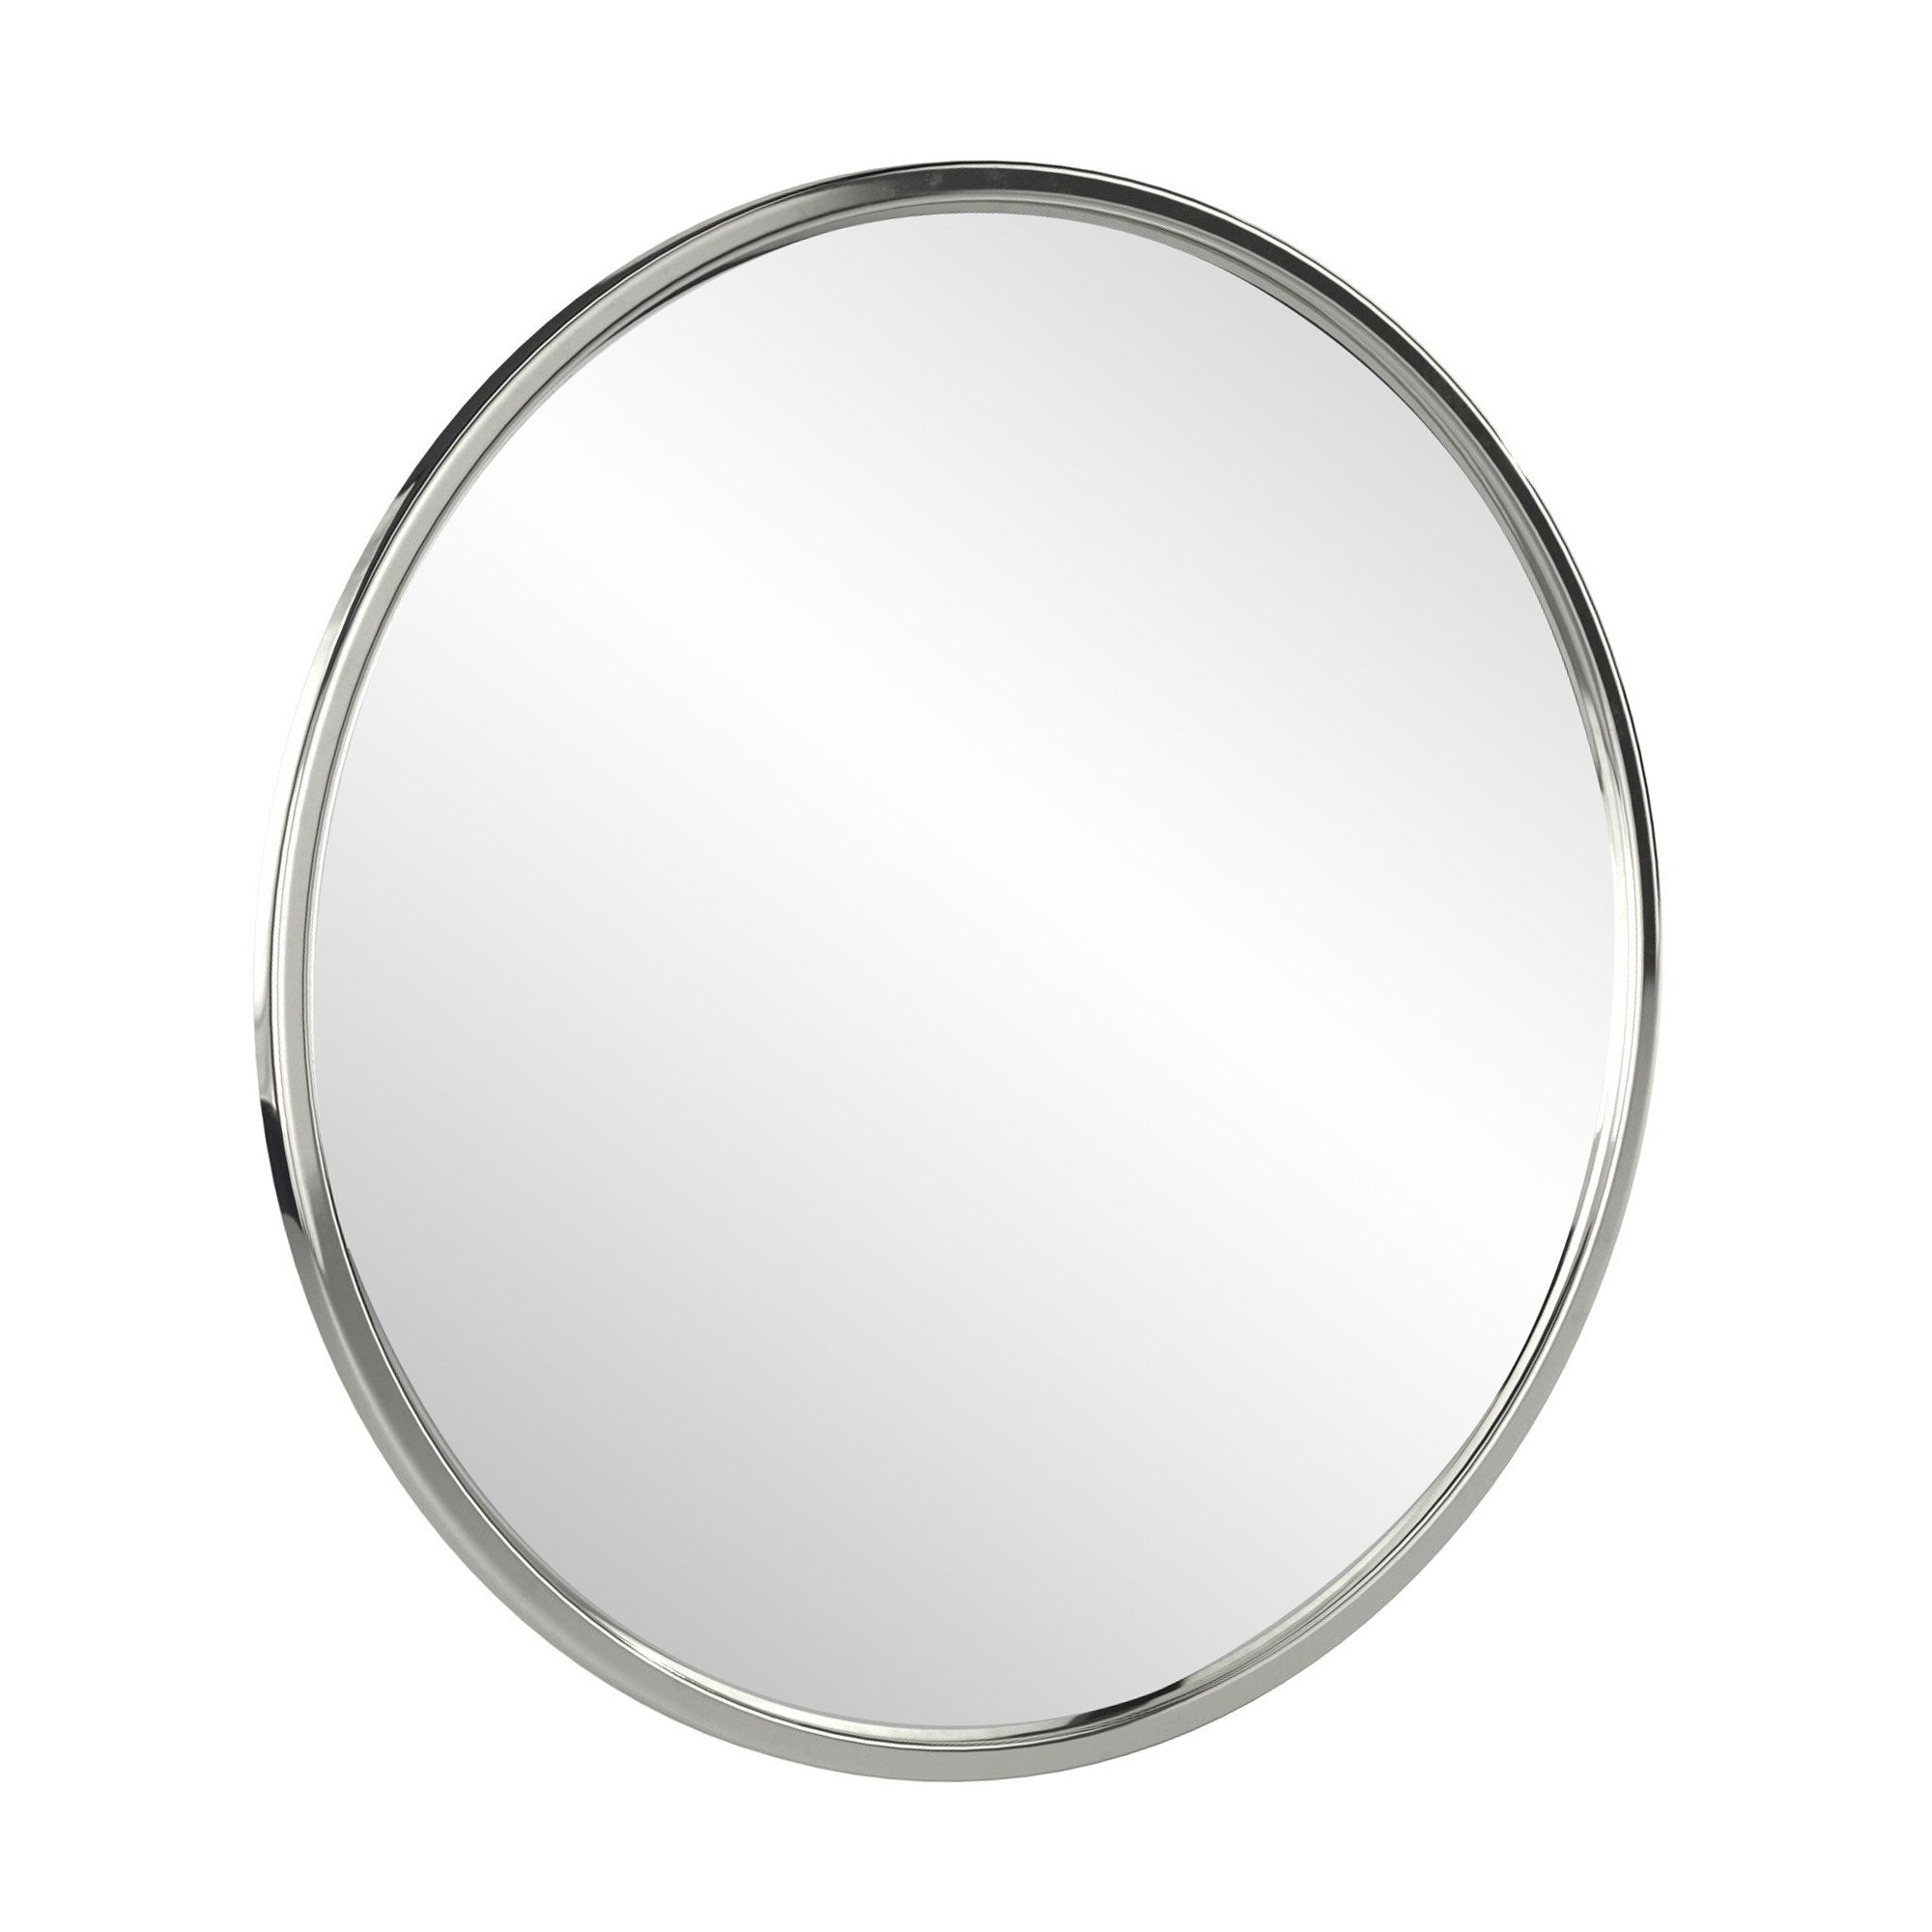 Simone Round Mirror